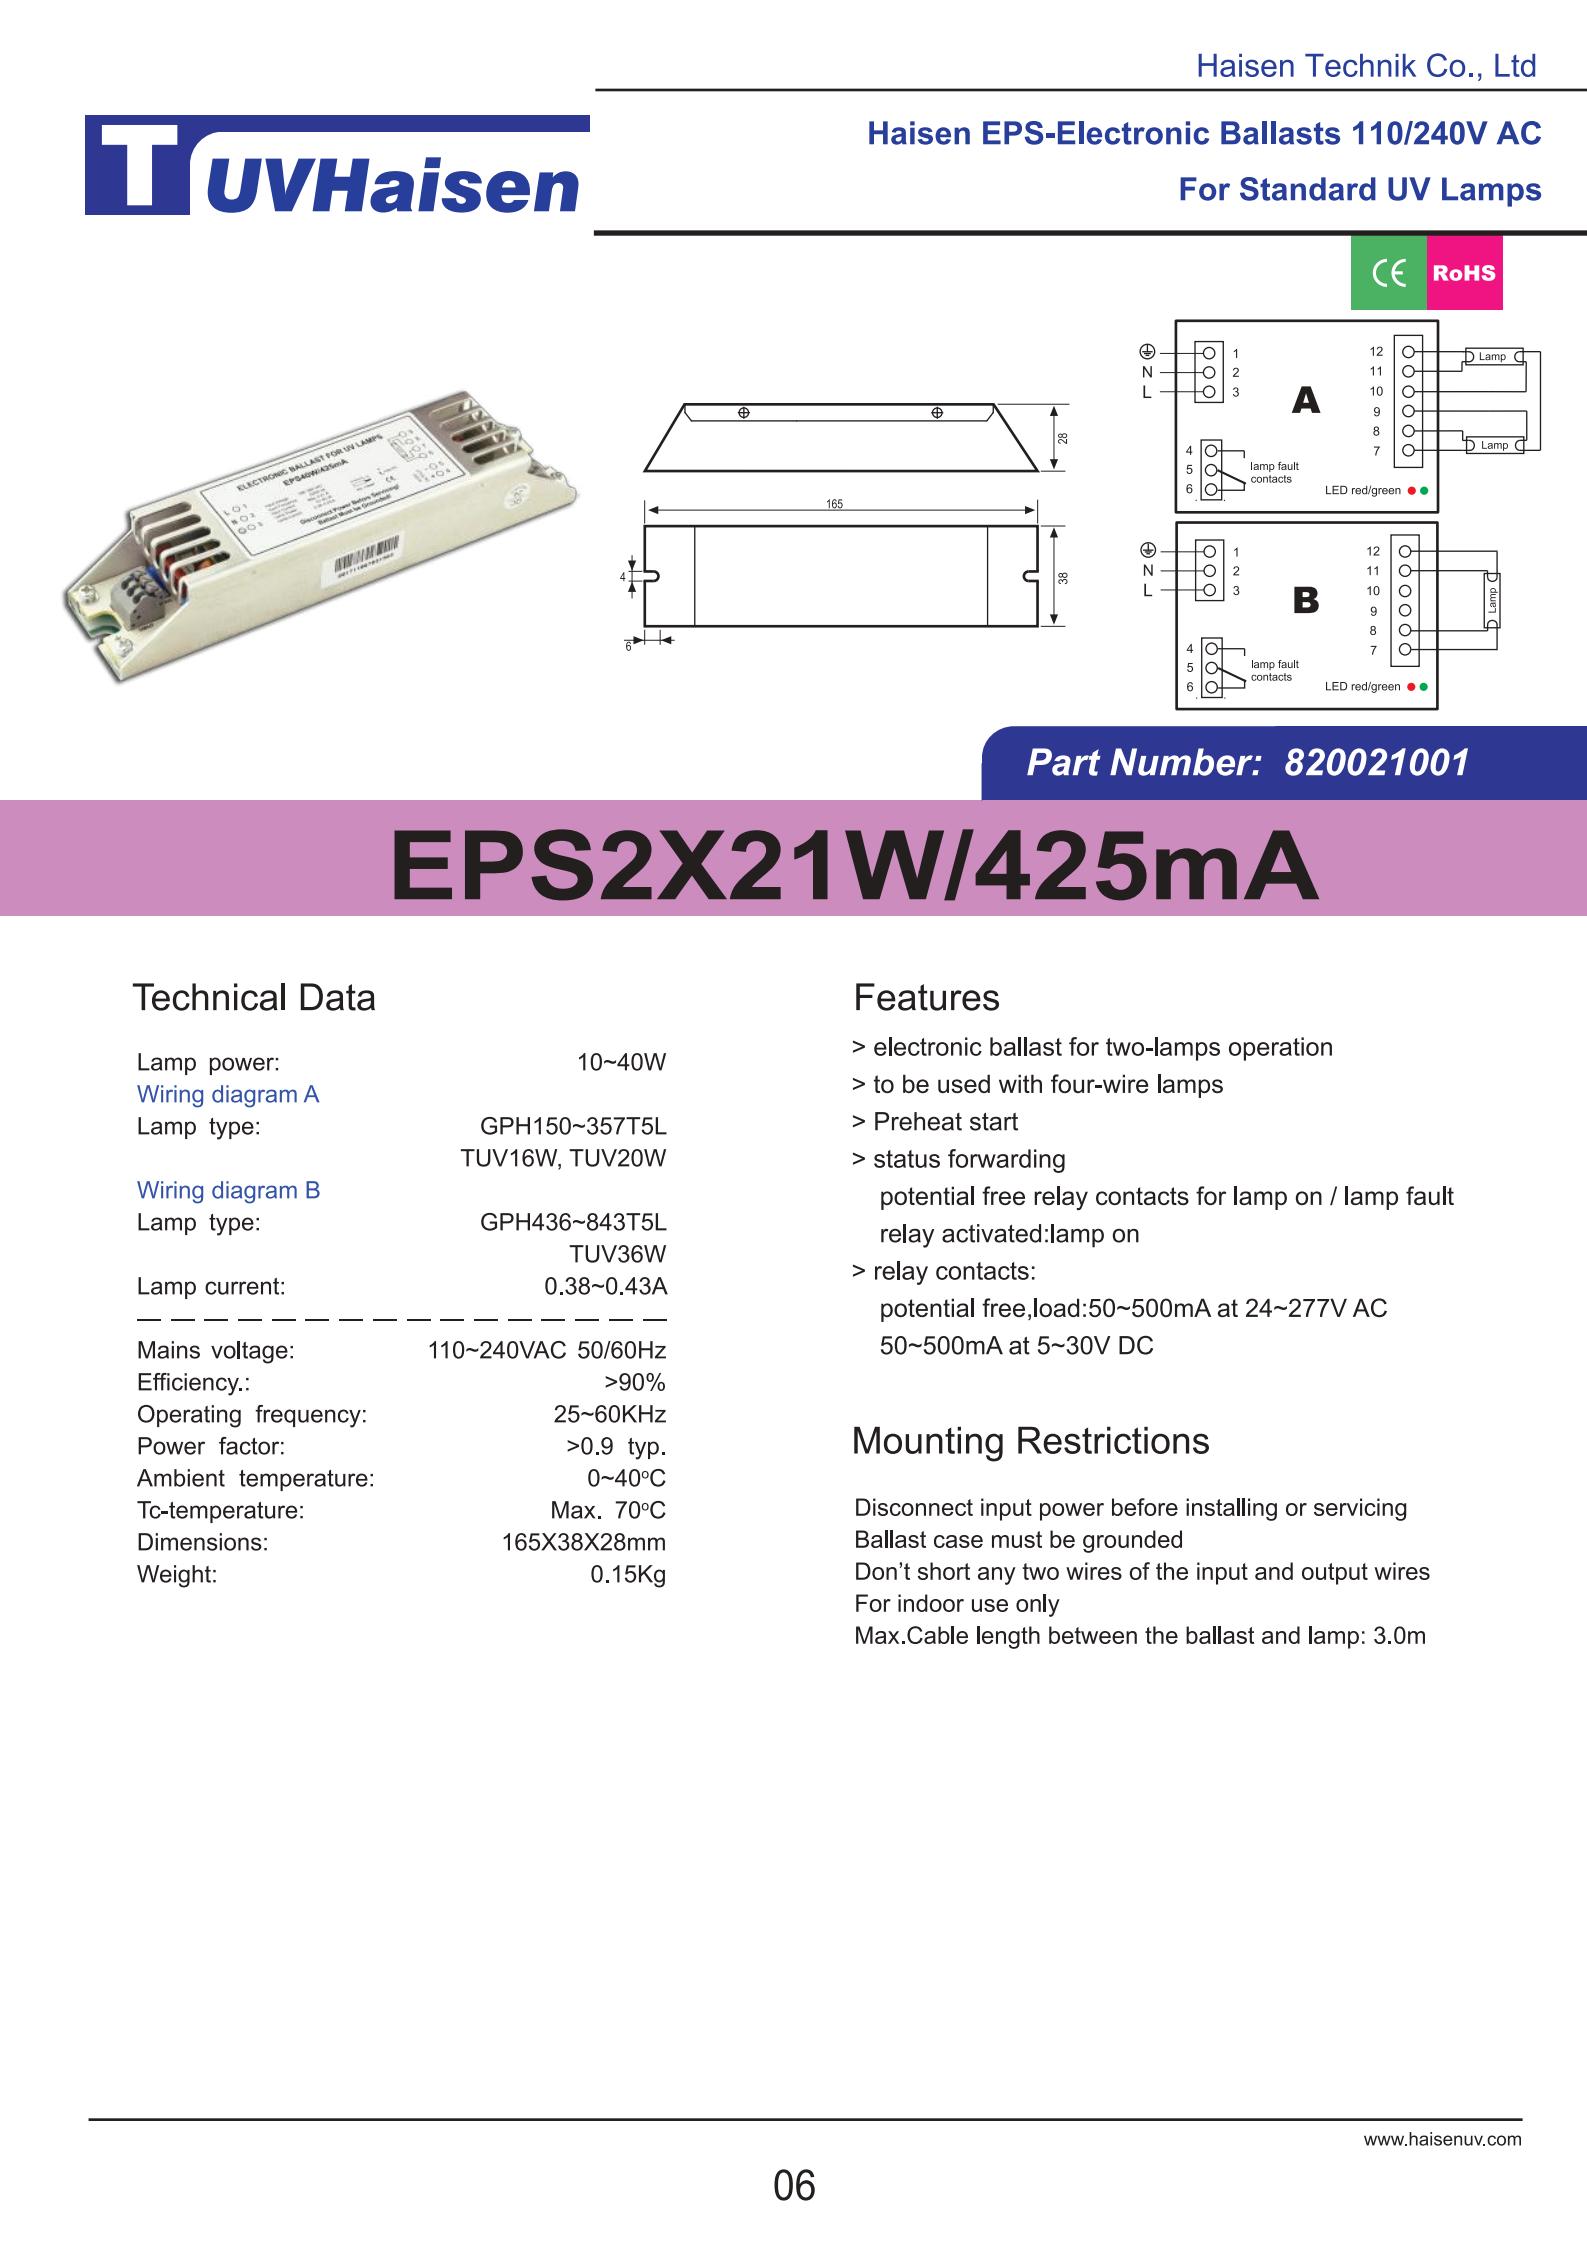 ultravoilet ballast EPS2X21W/425mA FOR UV LIGHTS